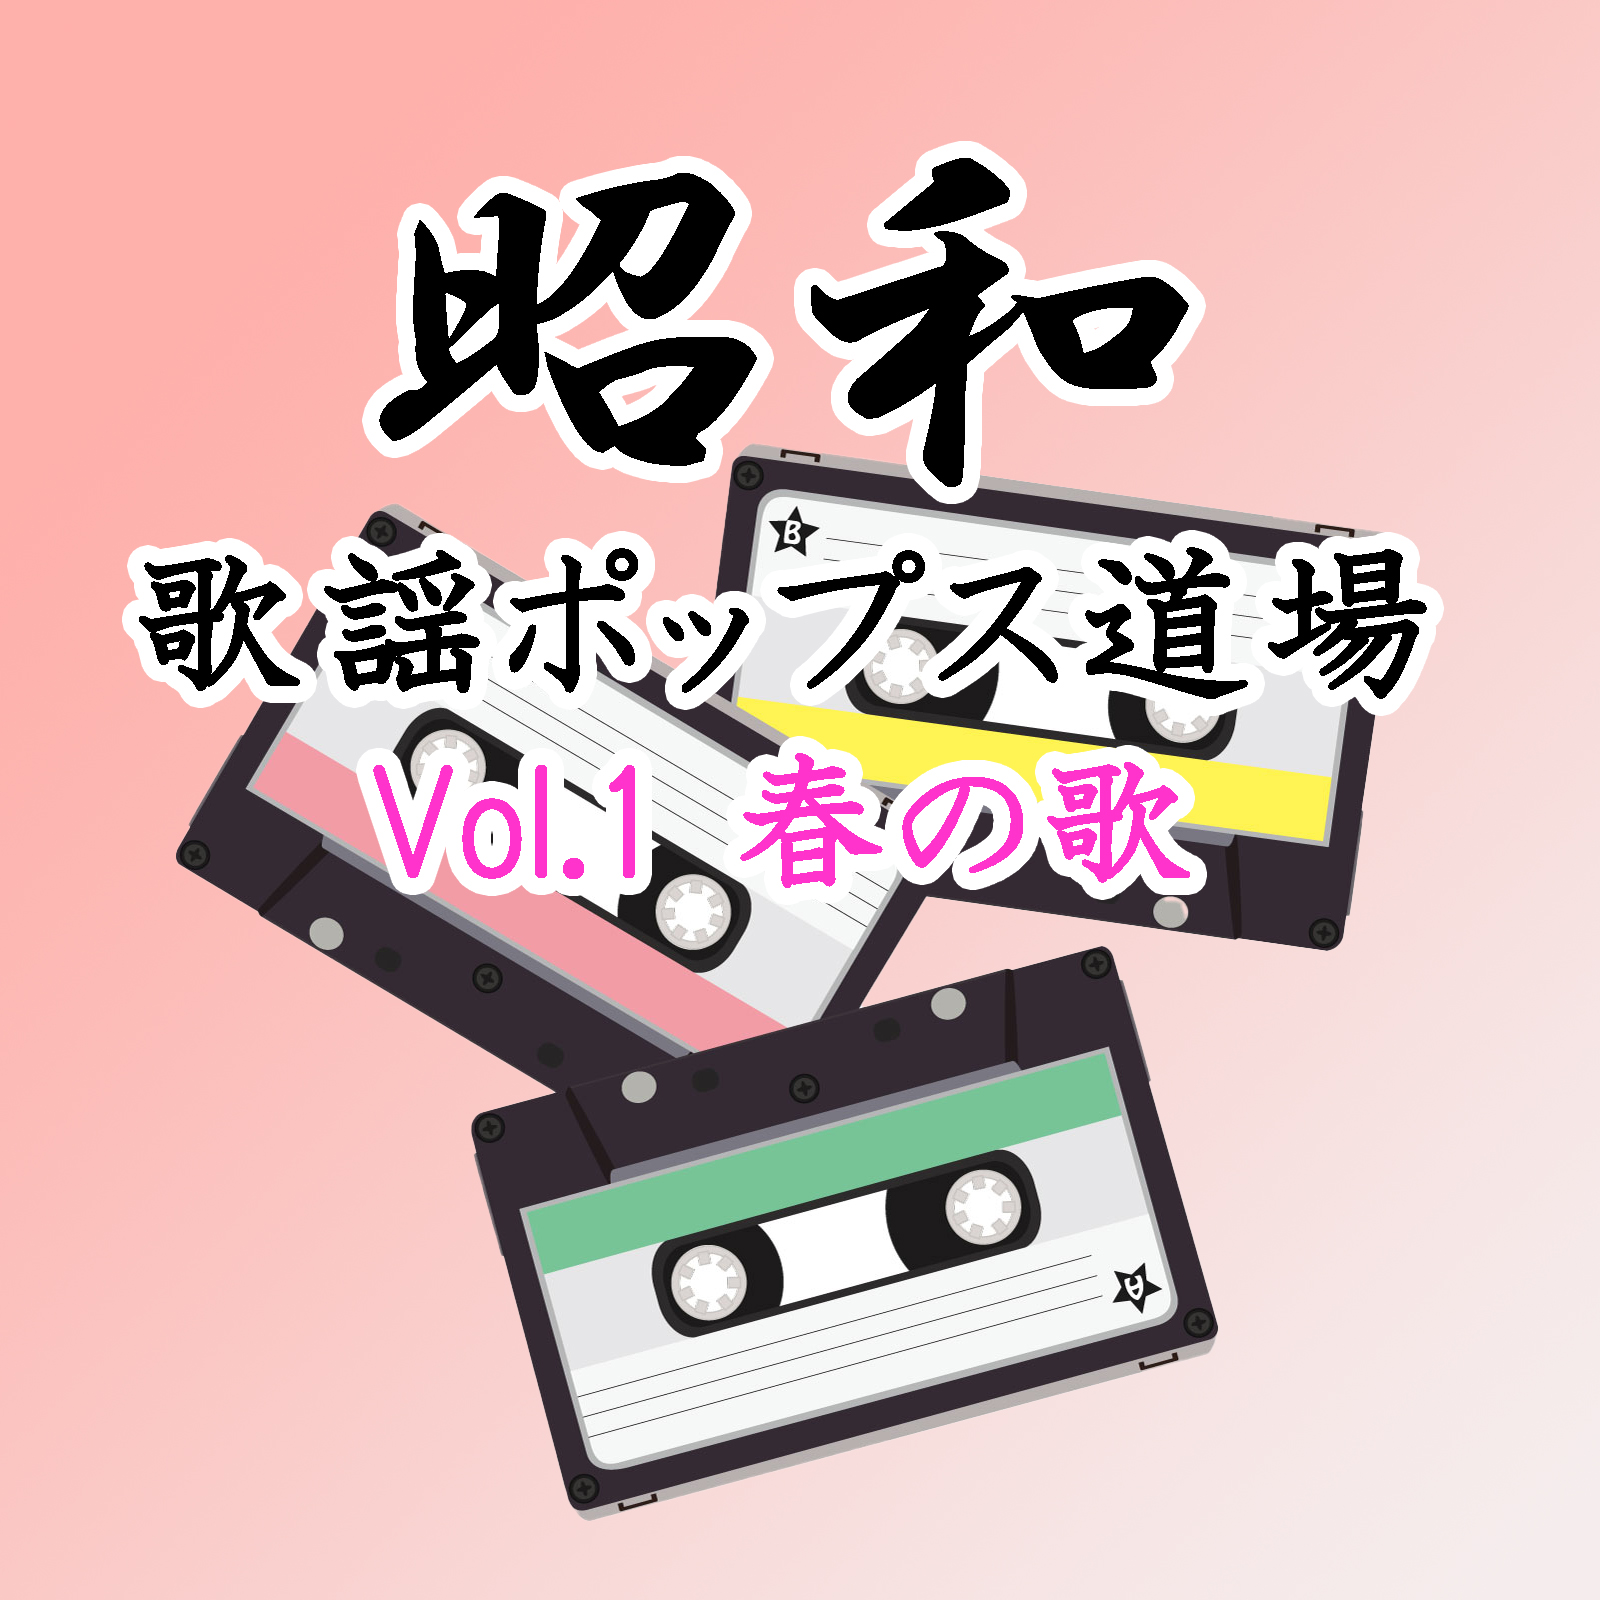 昭和歌謡ポップス道場 Vol.1 春の歌